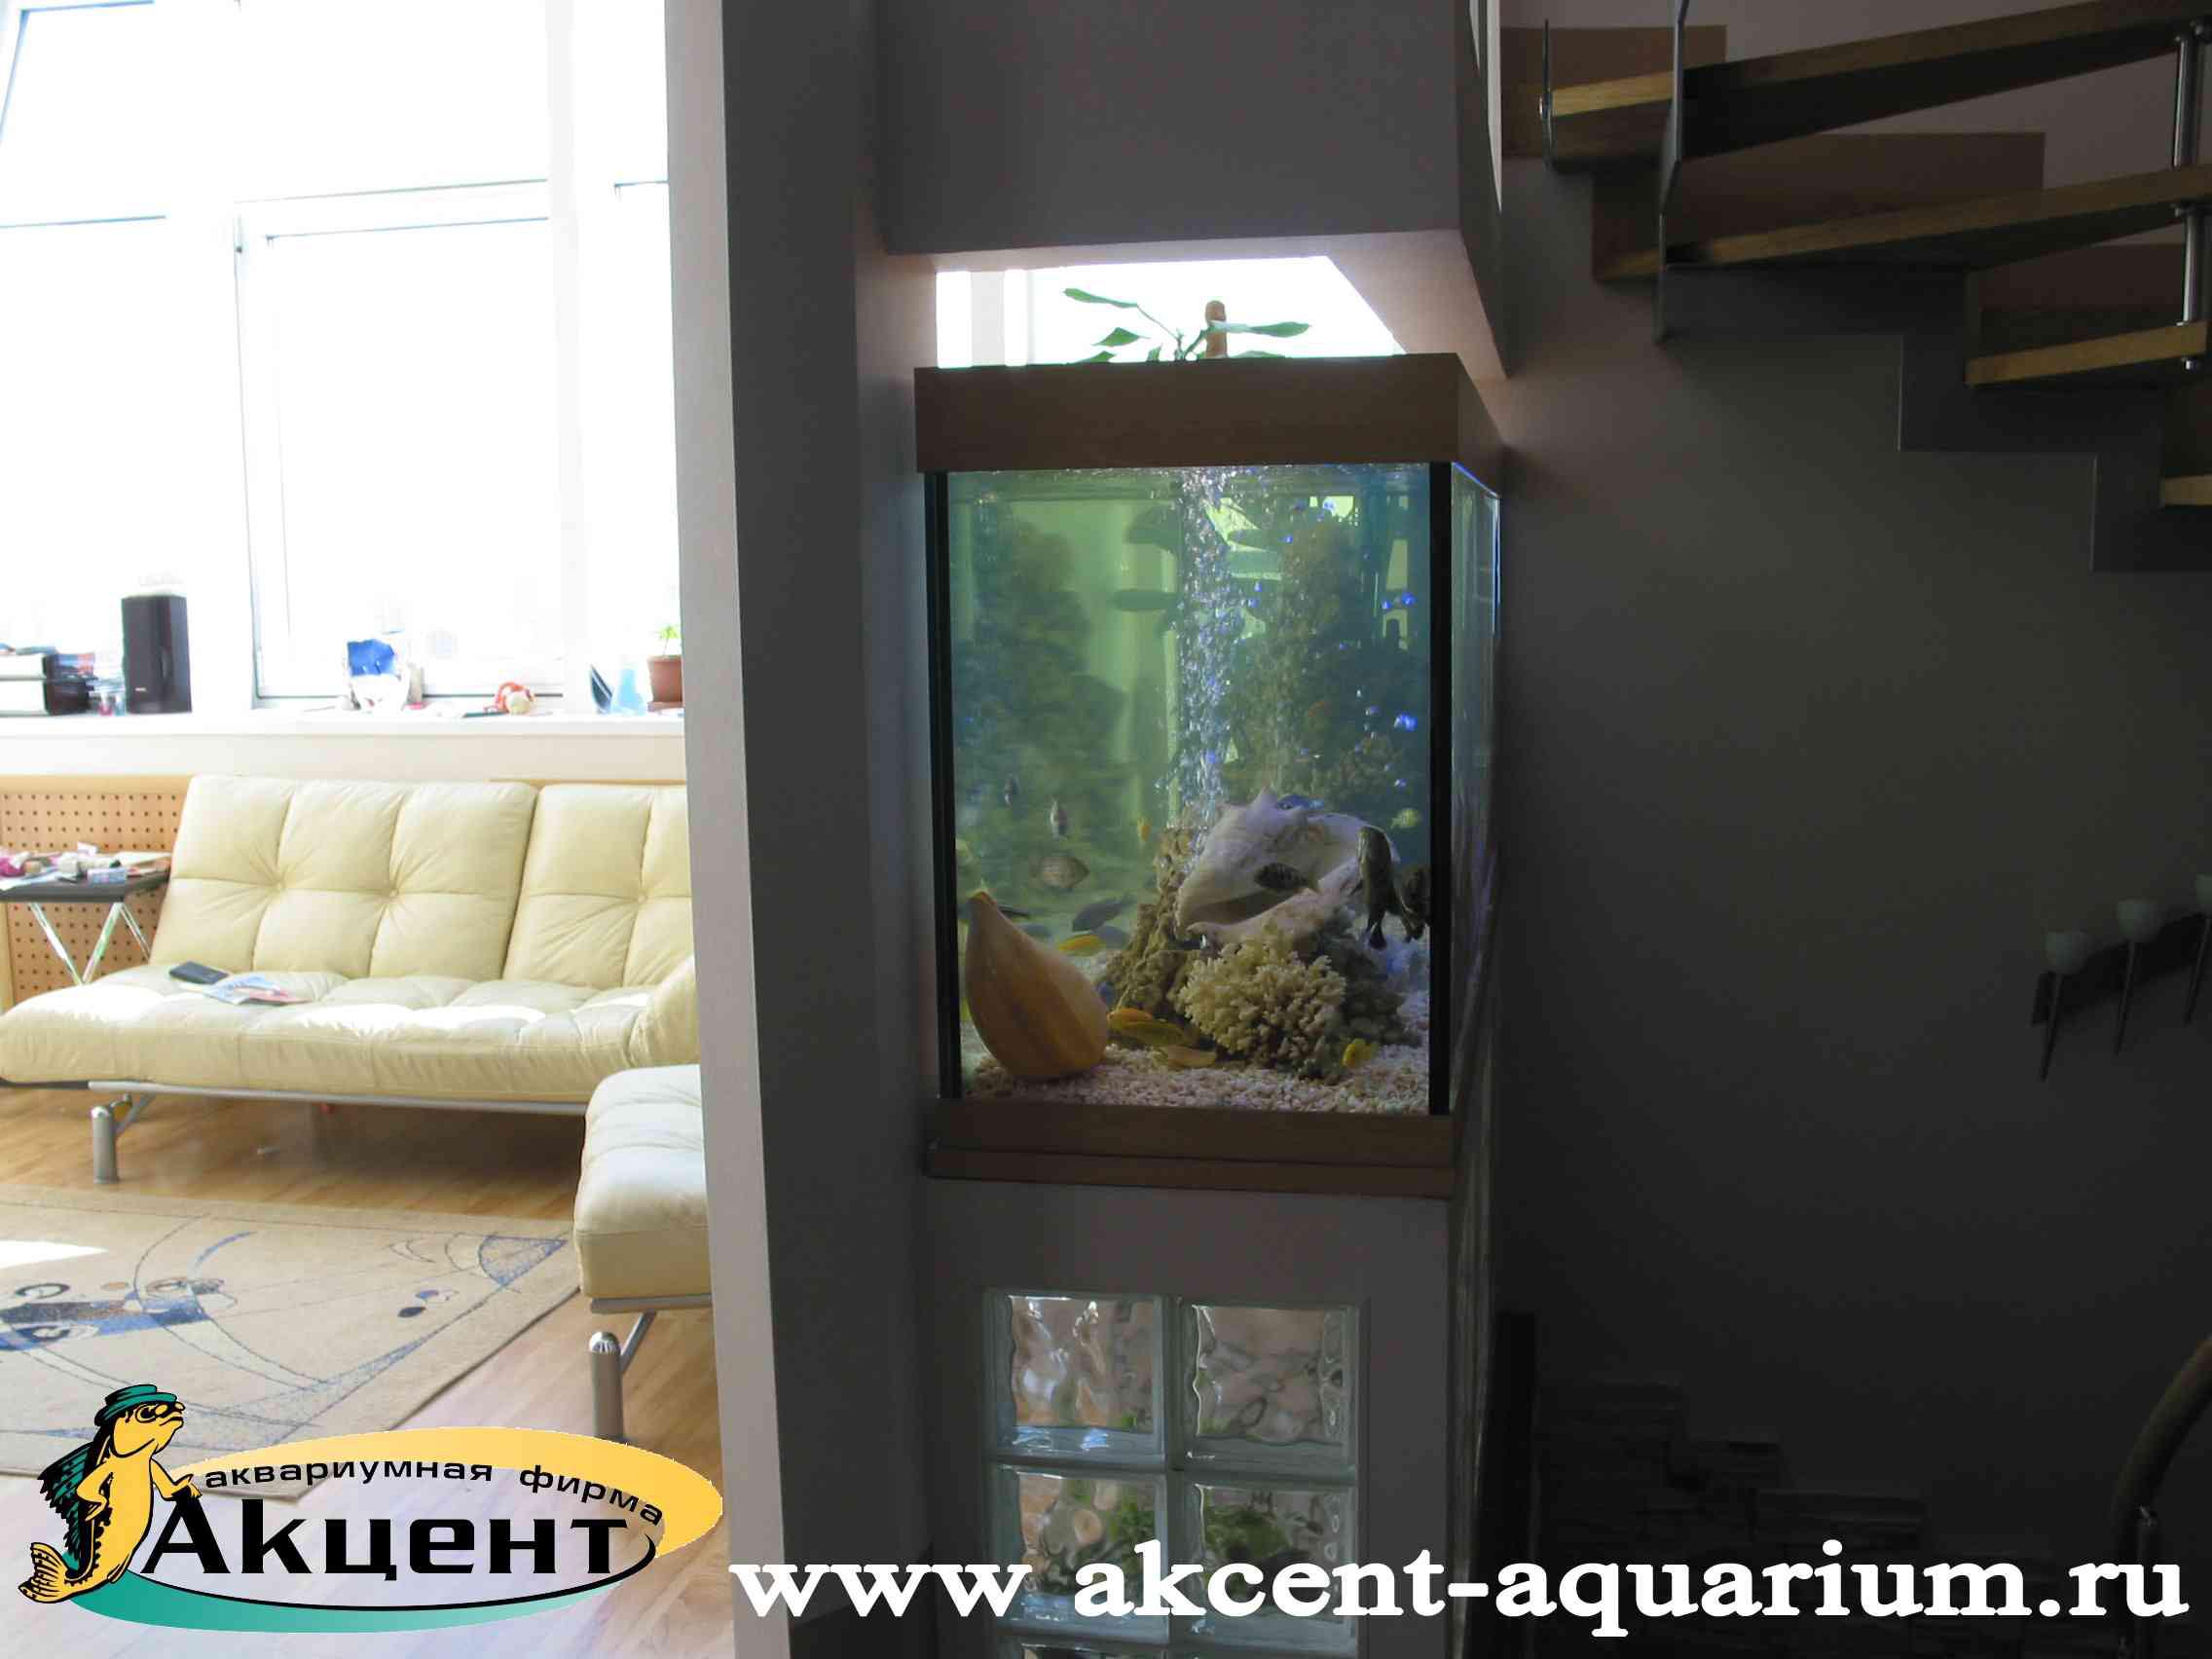 Акцент-аквариум, аквариум просмотровый 800 литров